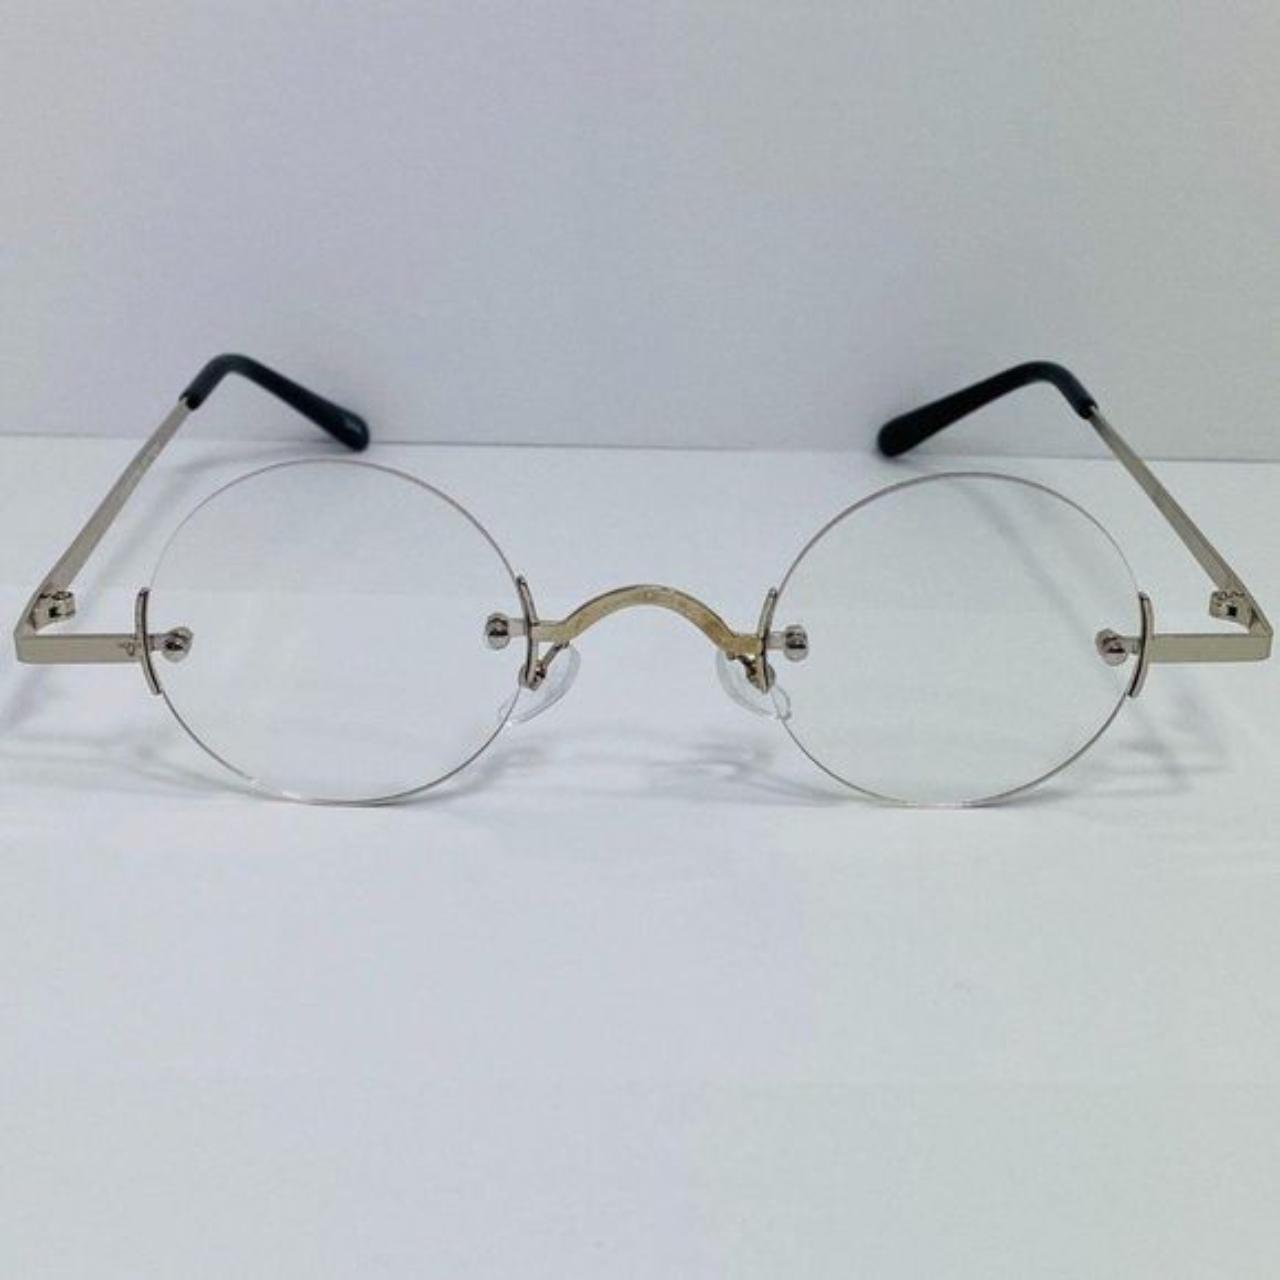 Home - ClearDekho - Eyeglasses, Sunglasses, Contact Lens, Frames